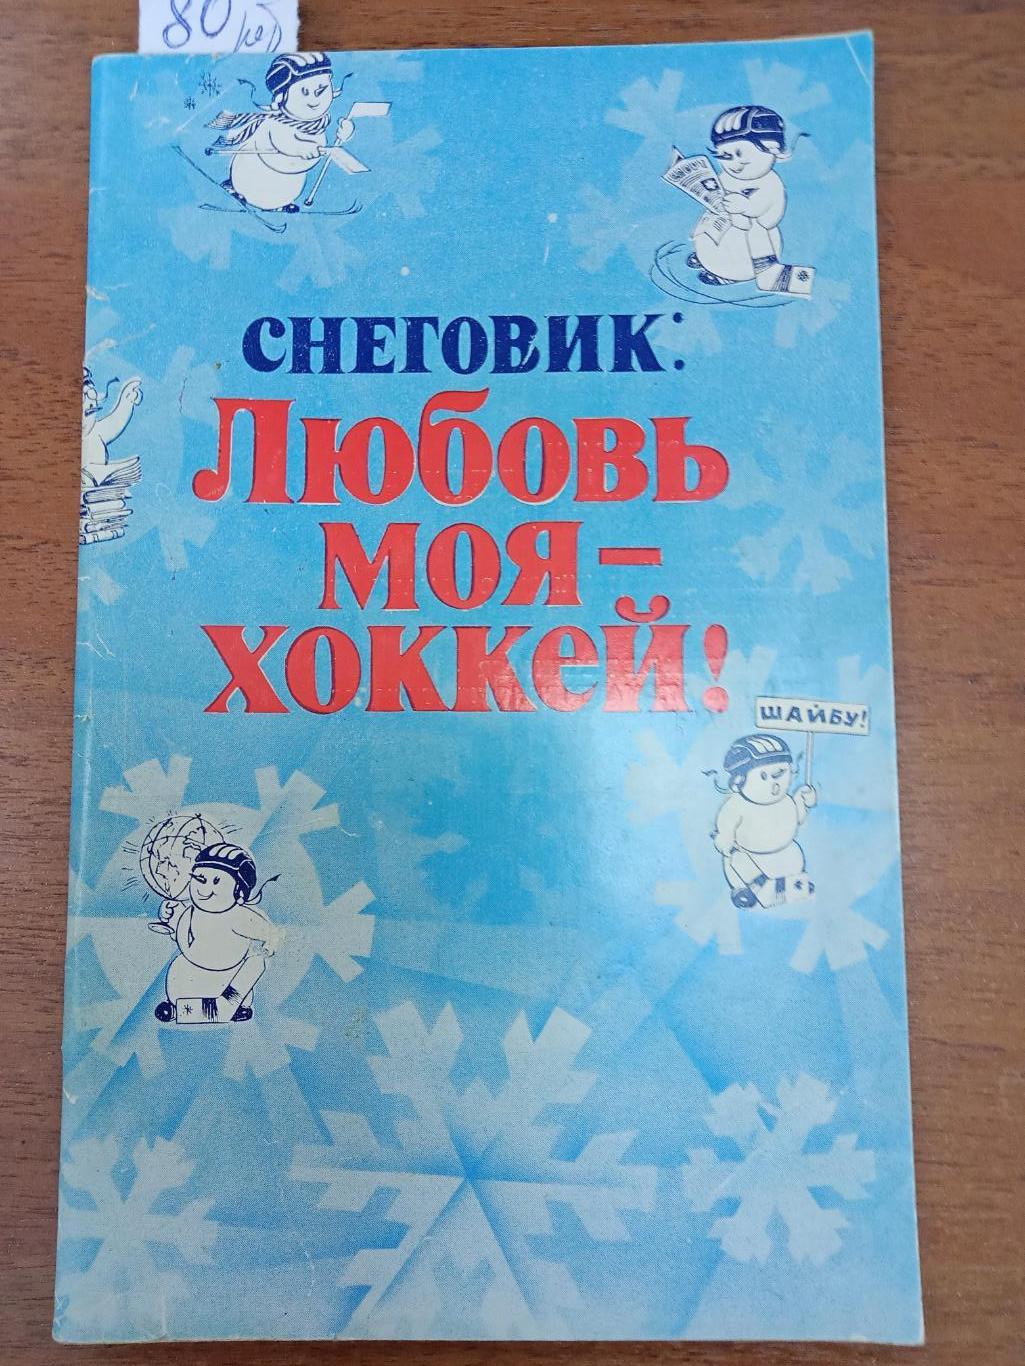 Хоккей. Москва. Известия.1982. Справочник.